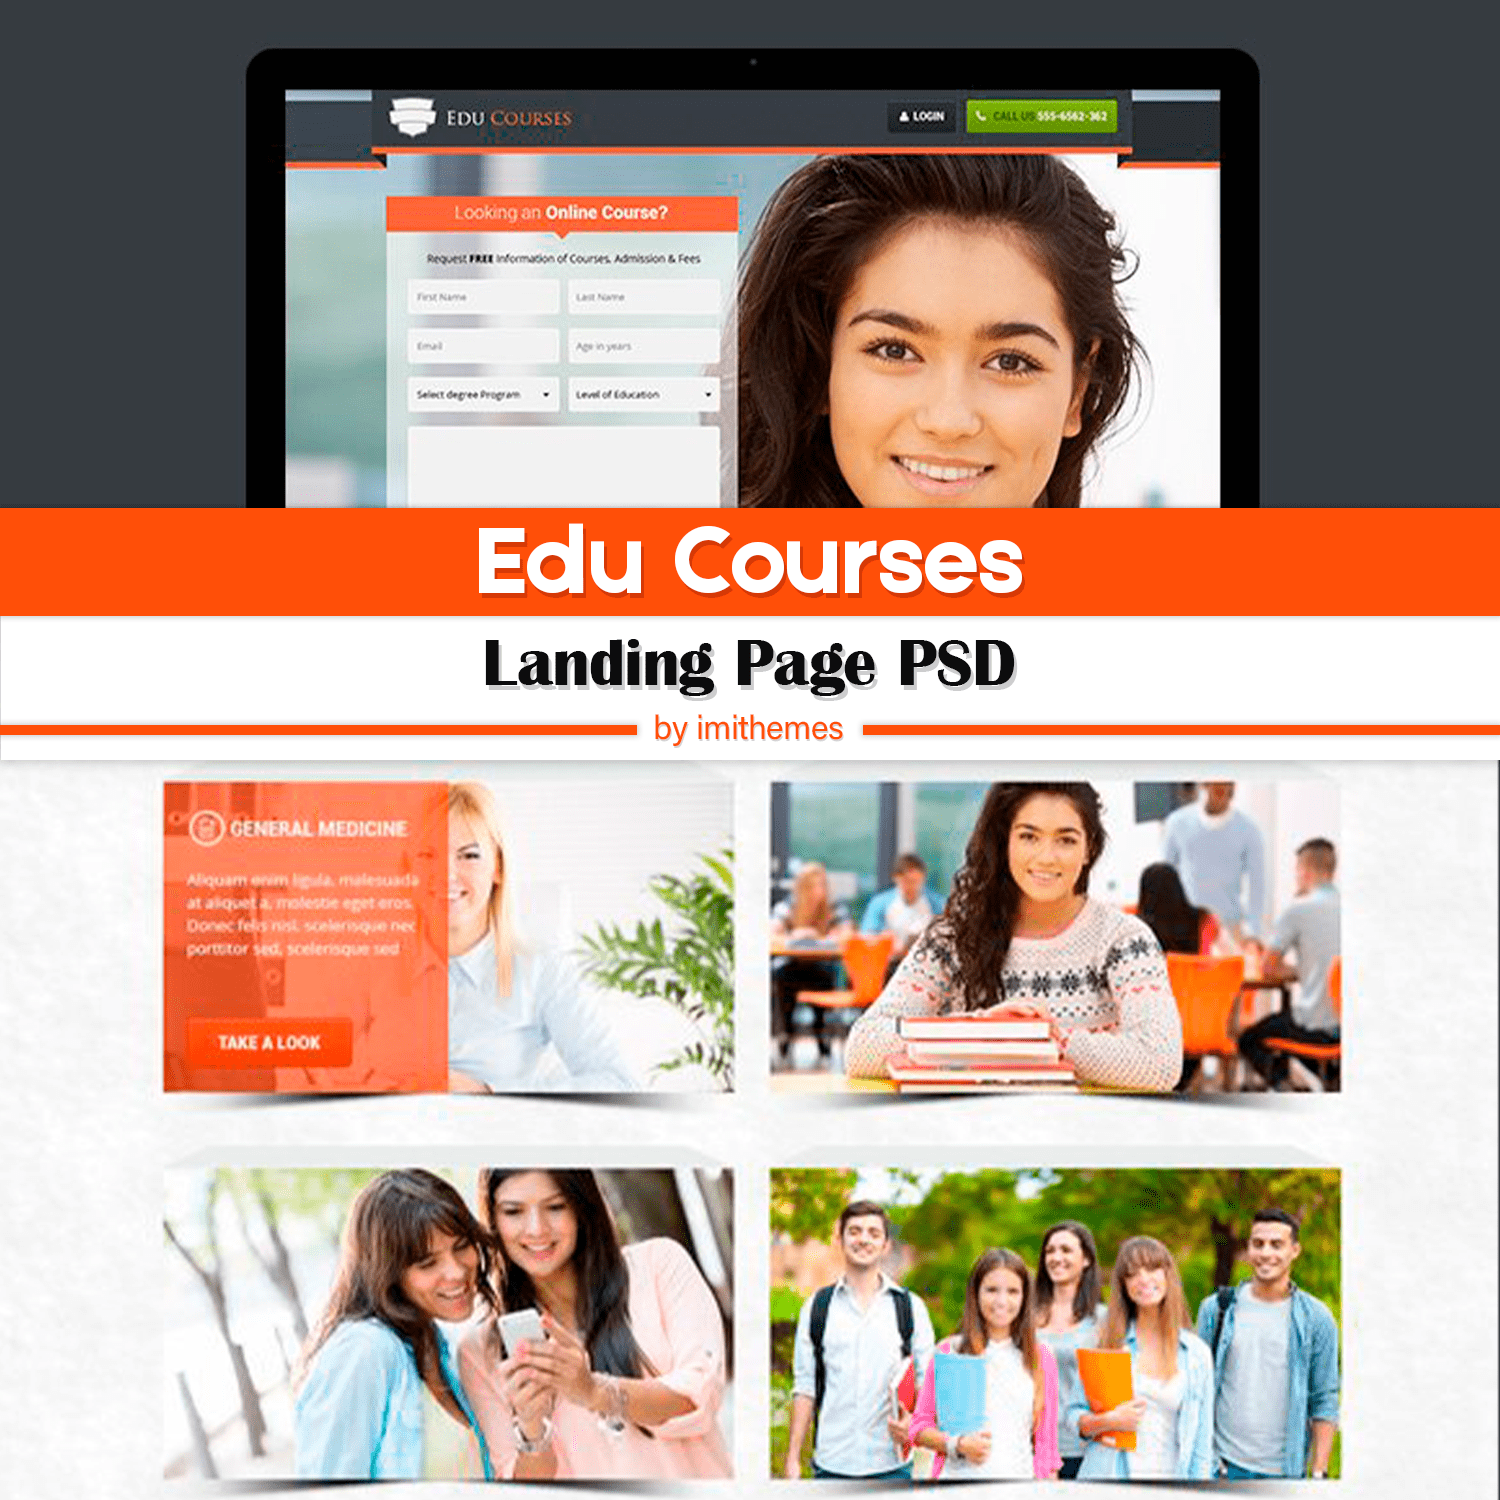 Edu Courses - Landing Page PSD cover.